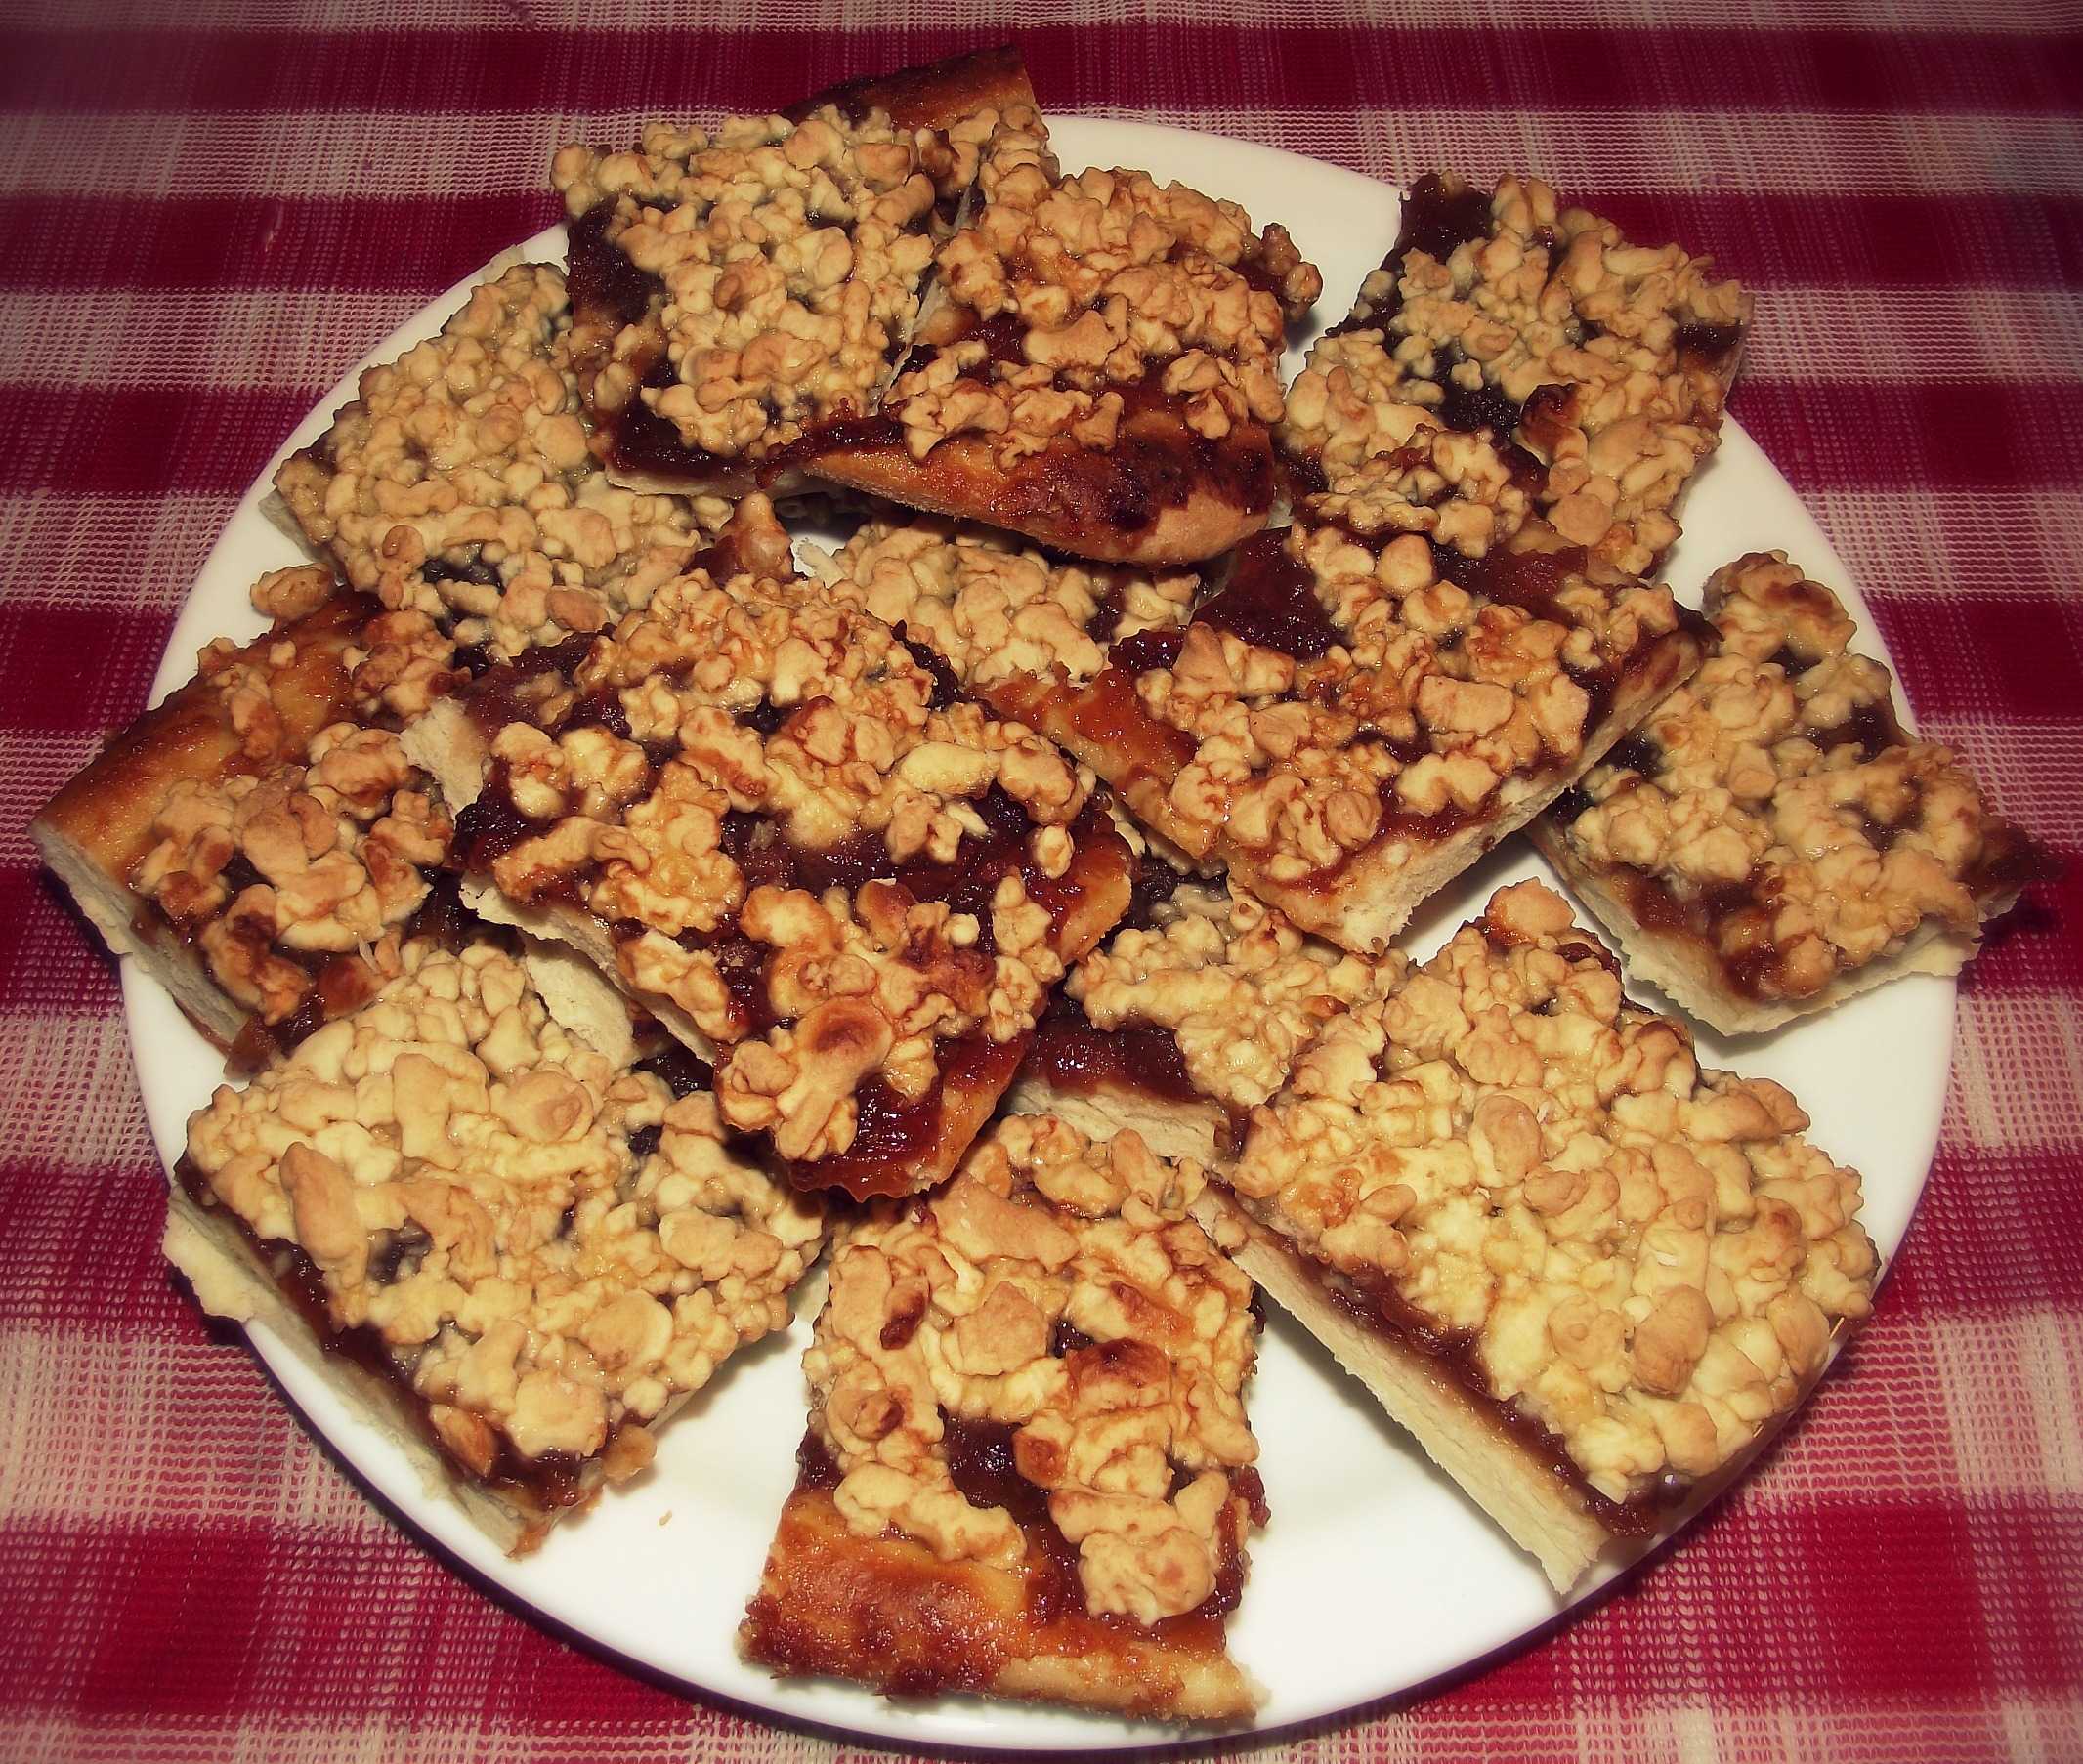 Медовое печенье - 9 рецептов с корицей, изюмом, орехами, имбирем, пошаговые фото